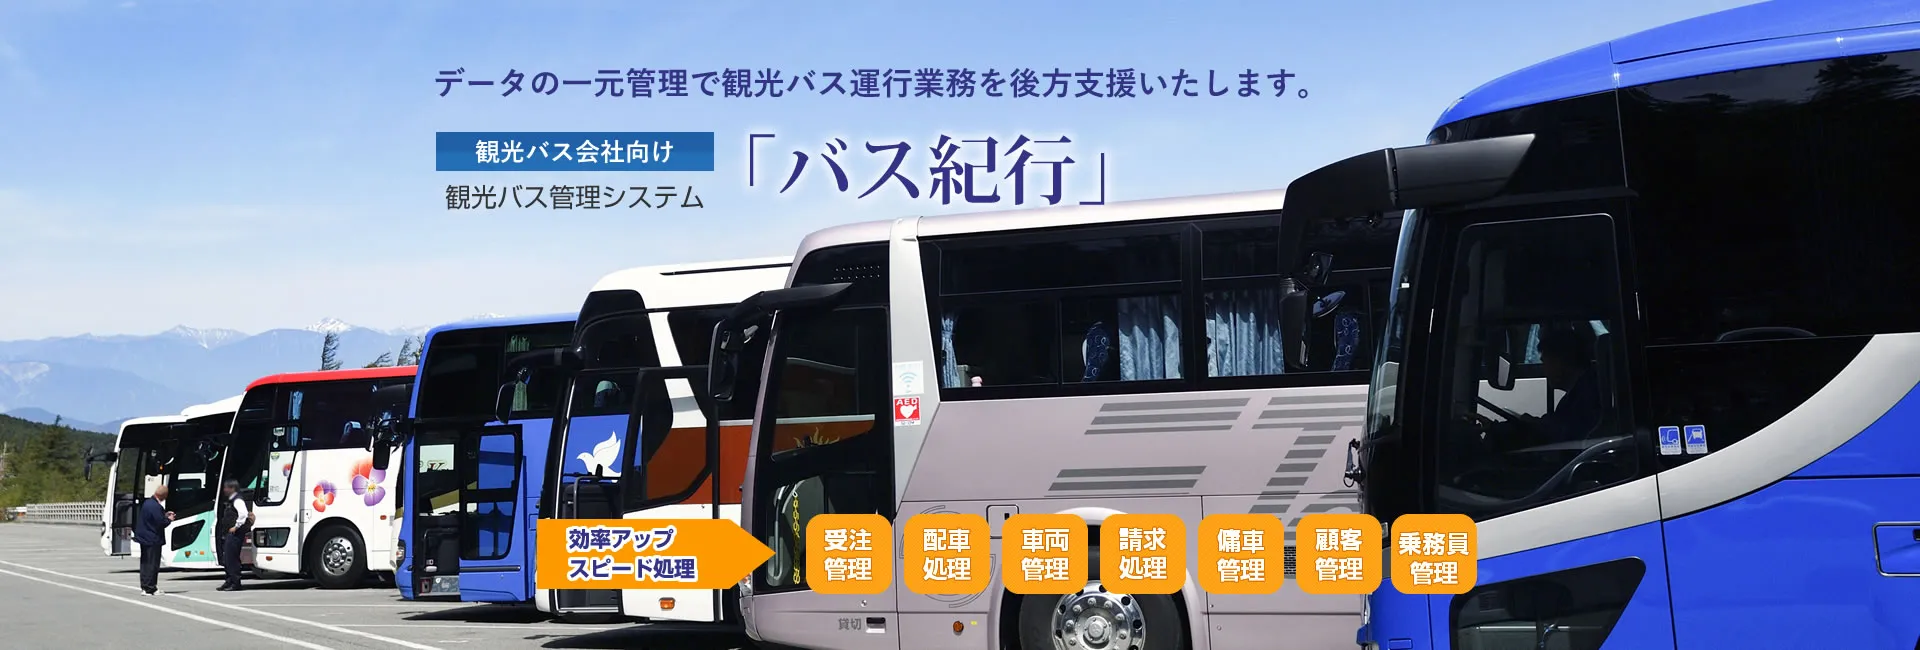 観光バス会社向けバス管理システム「バス紀行」で受注や車両、顧客、乗務員の管理や、配車処理など、運行業務を支援いたします